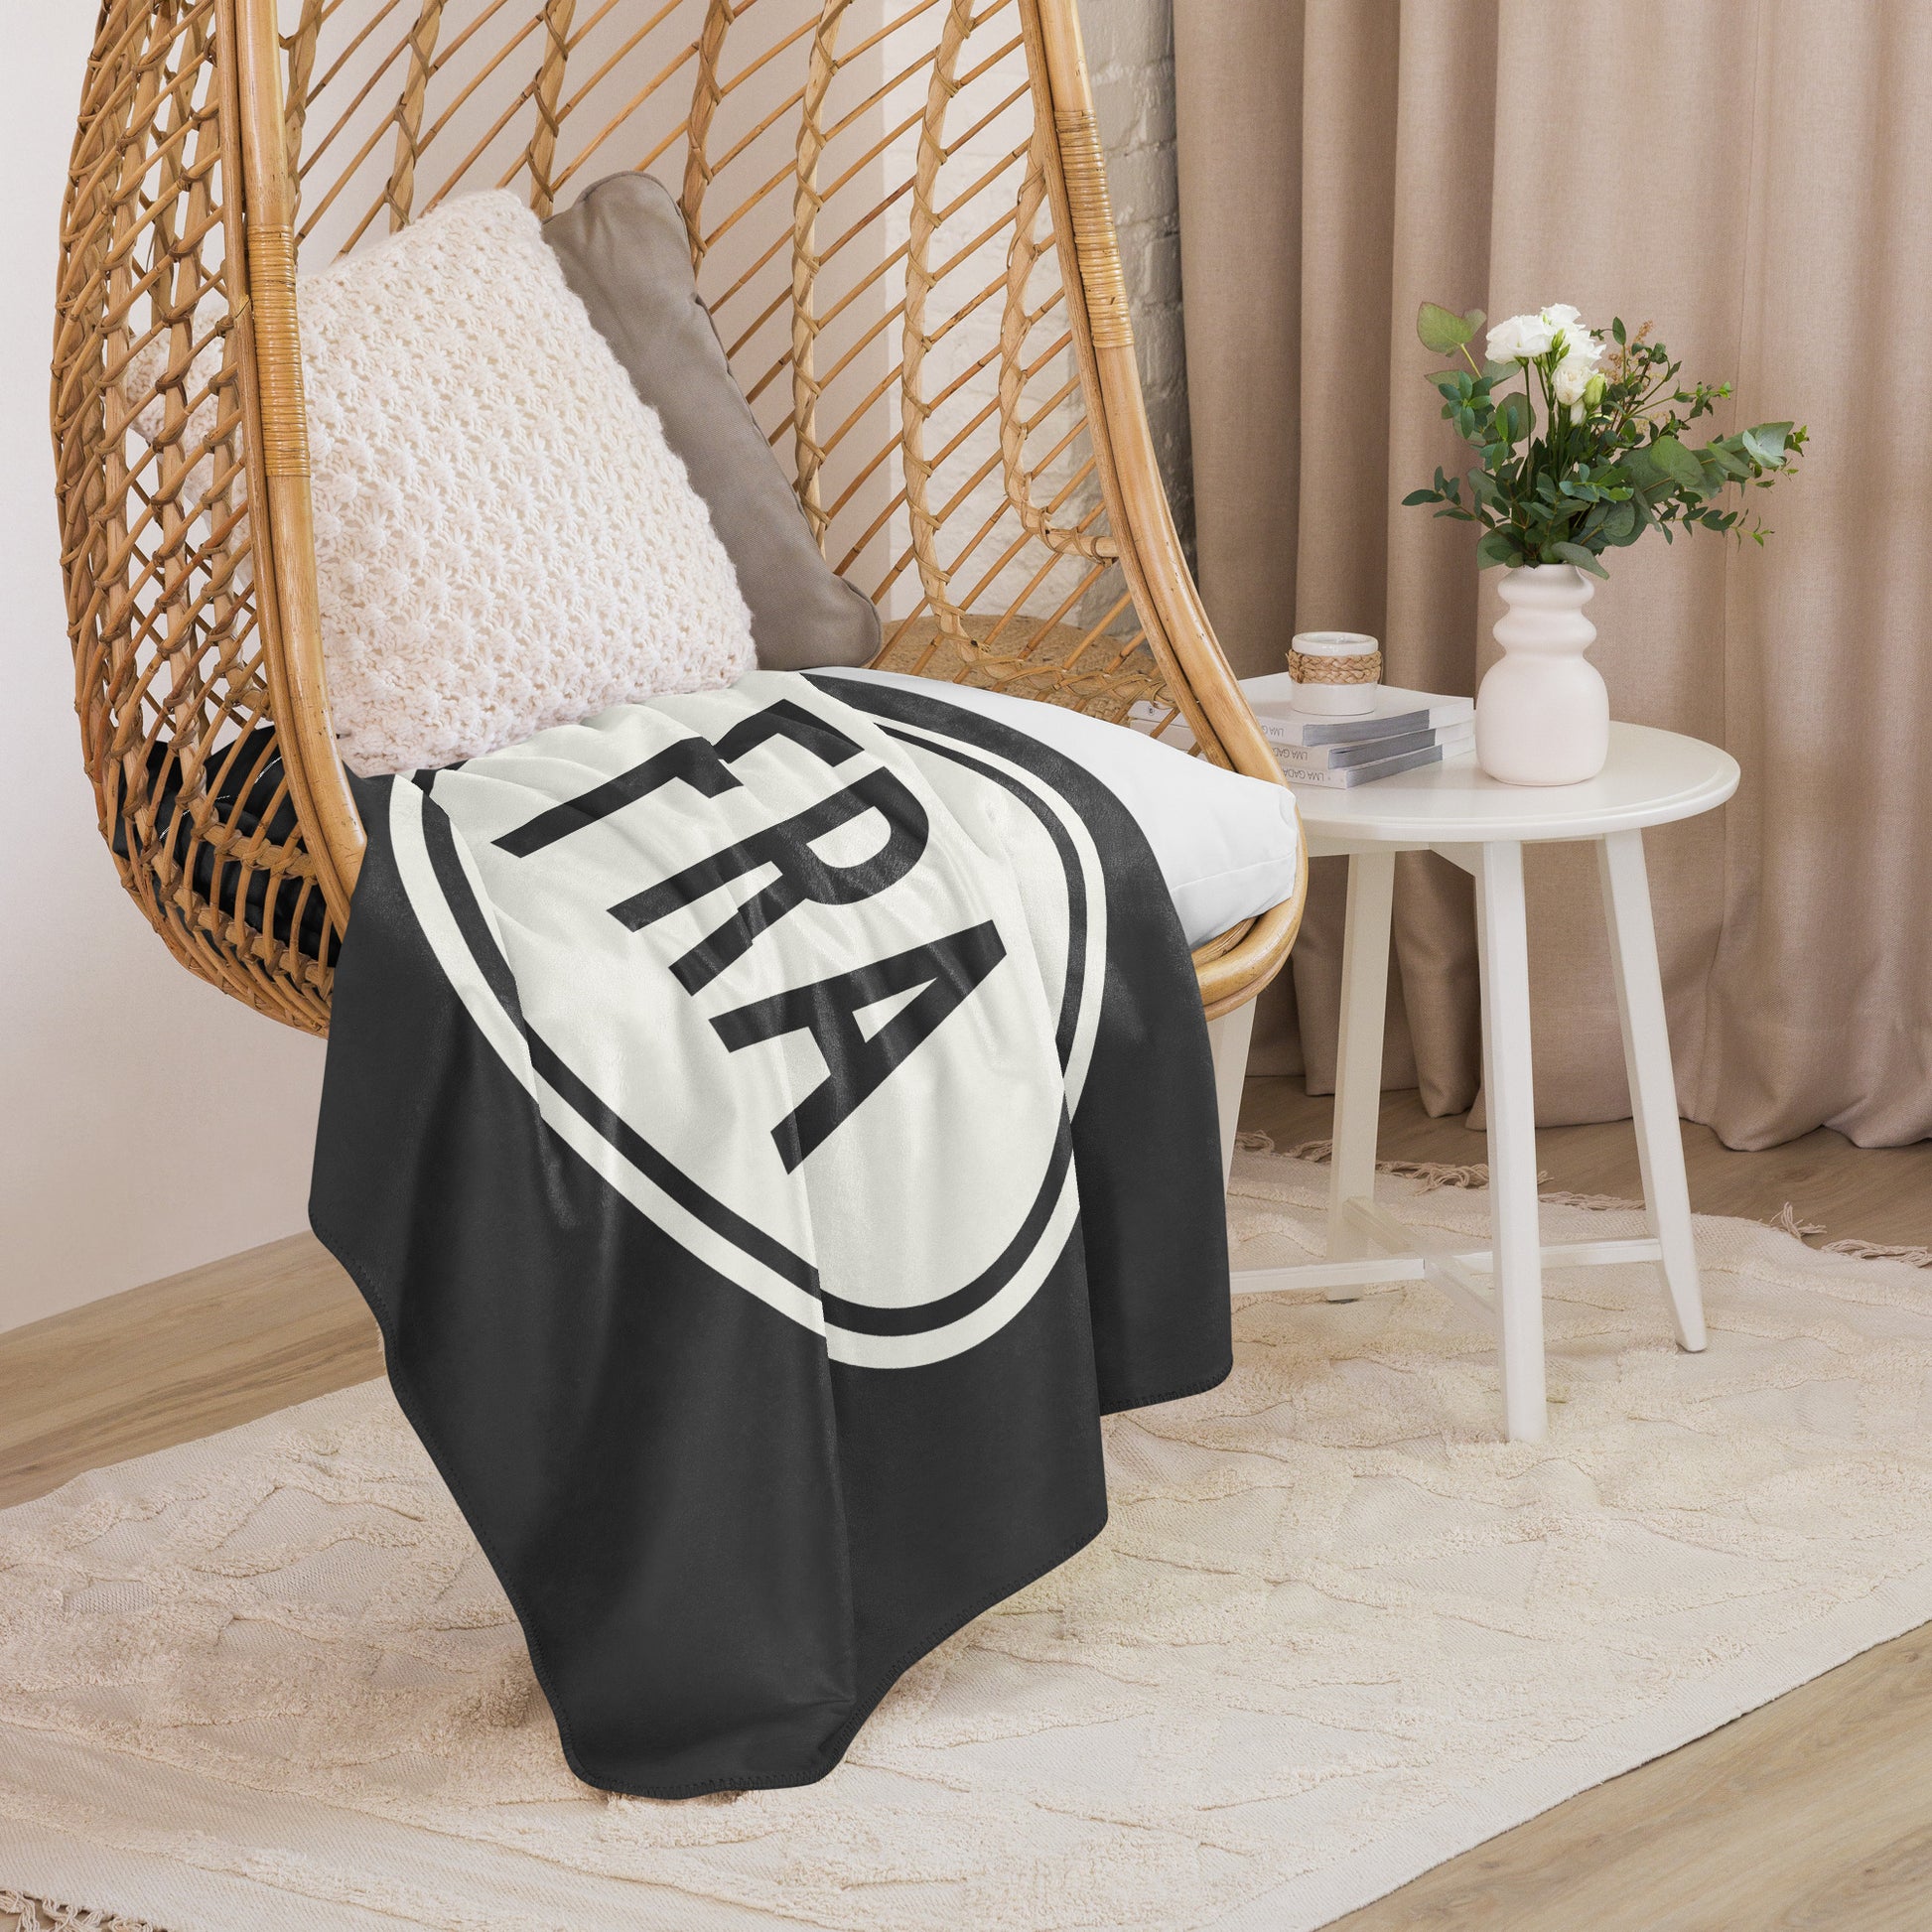 Unique Travel Gift Sherpa Blanket - White Oval • FRA Frankfurt • YHM Designs - Image 06